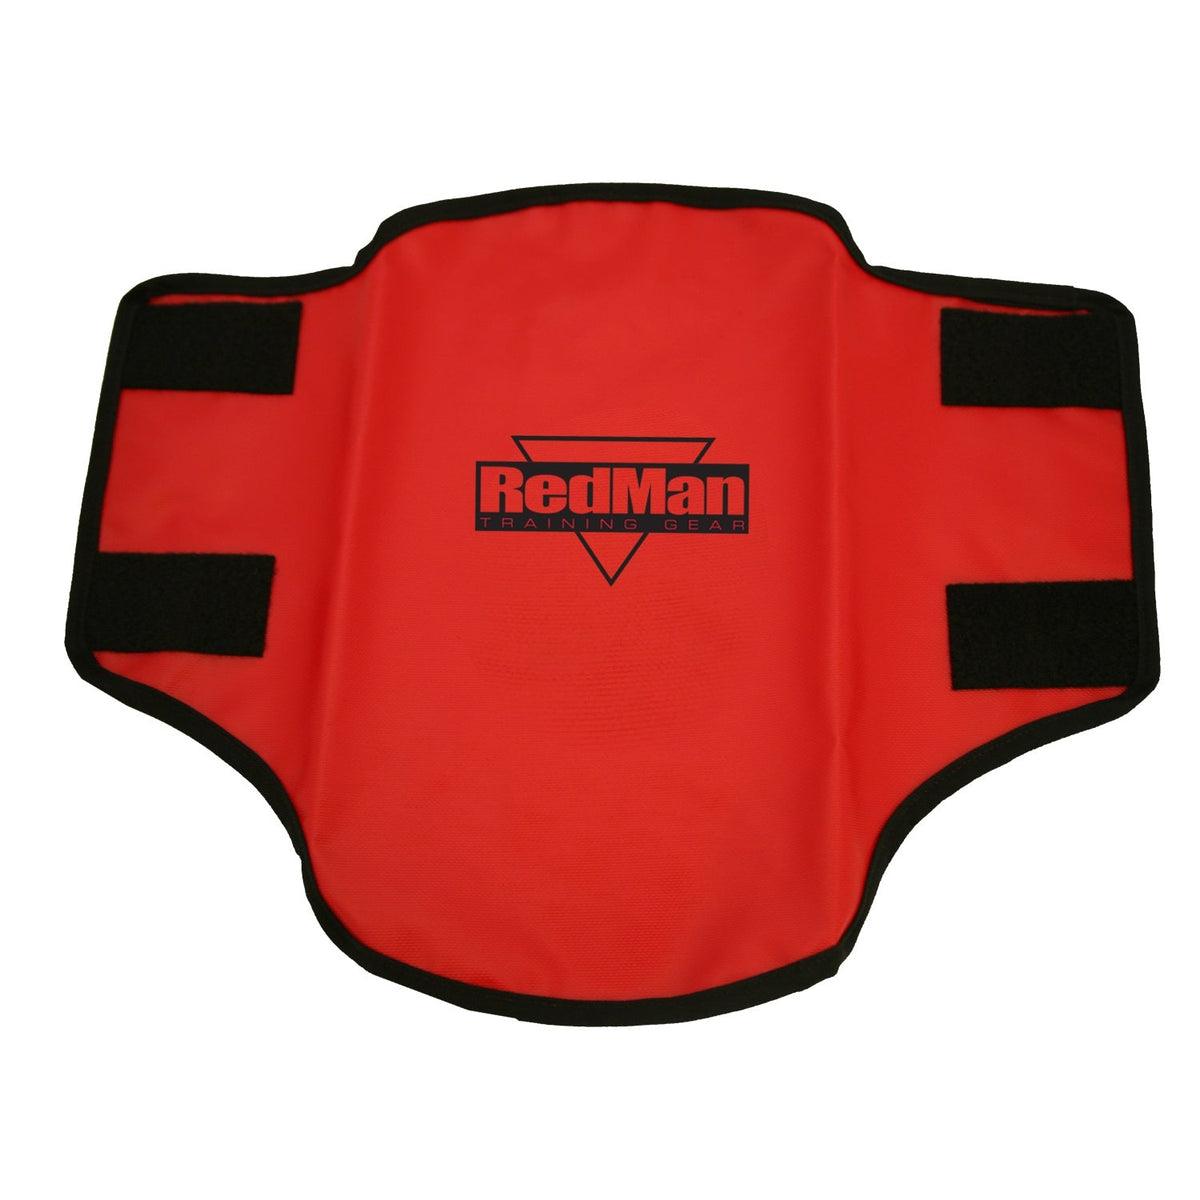 Redman Body Guard Protector Training Gear Redman Tactical Gear Supplier Tactical Distributors Australia